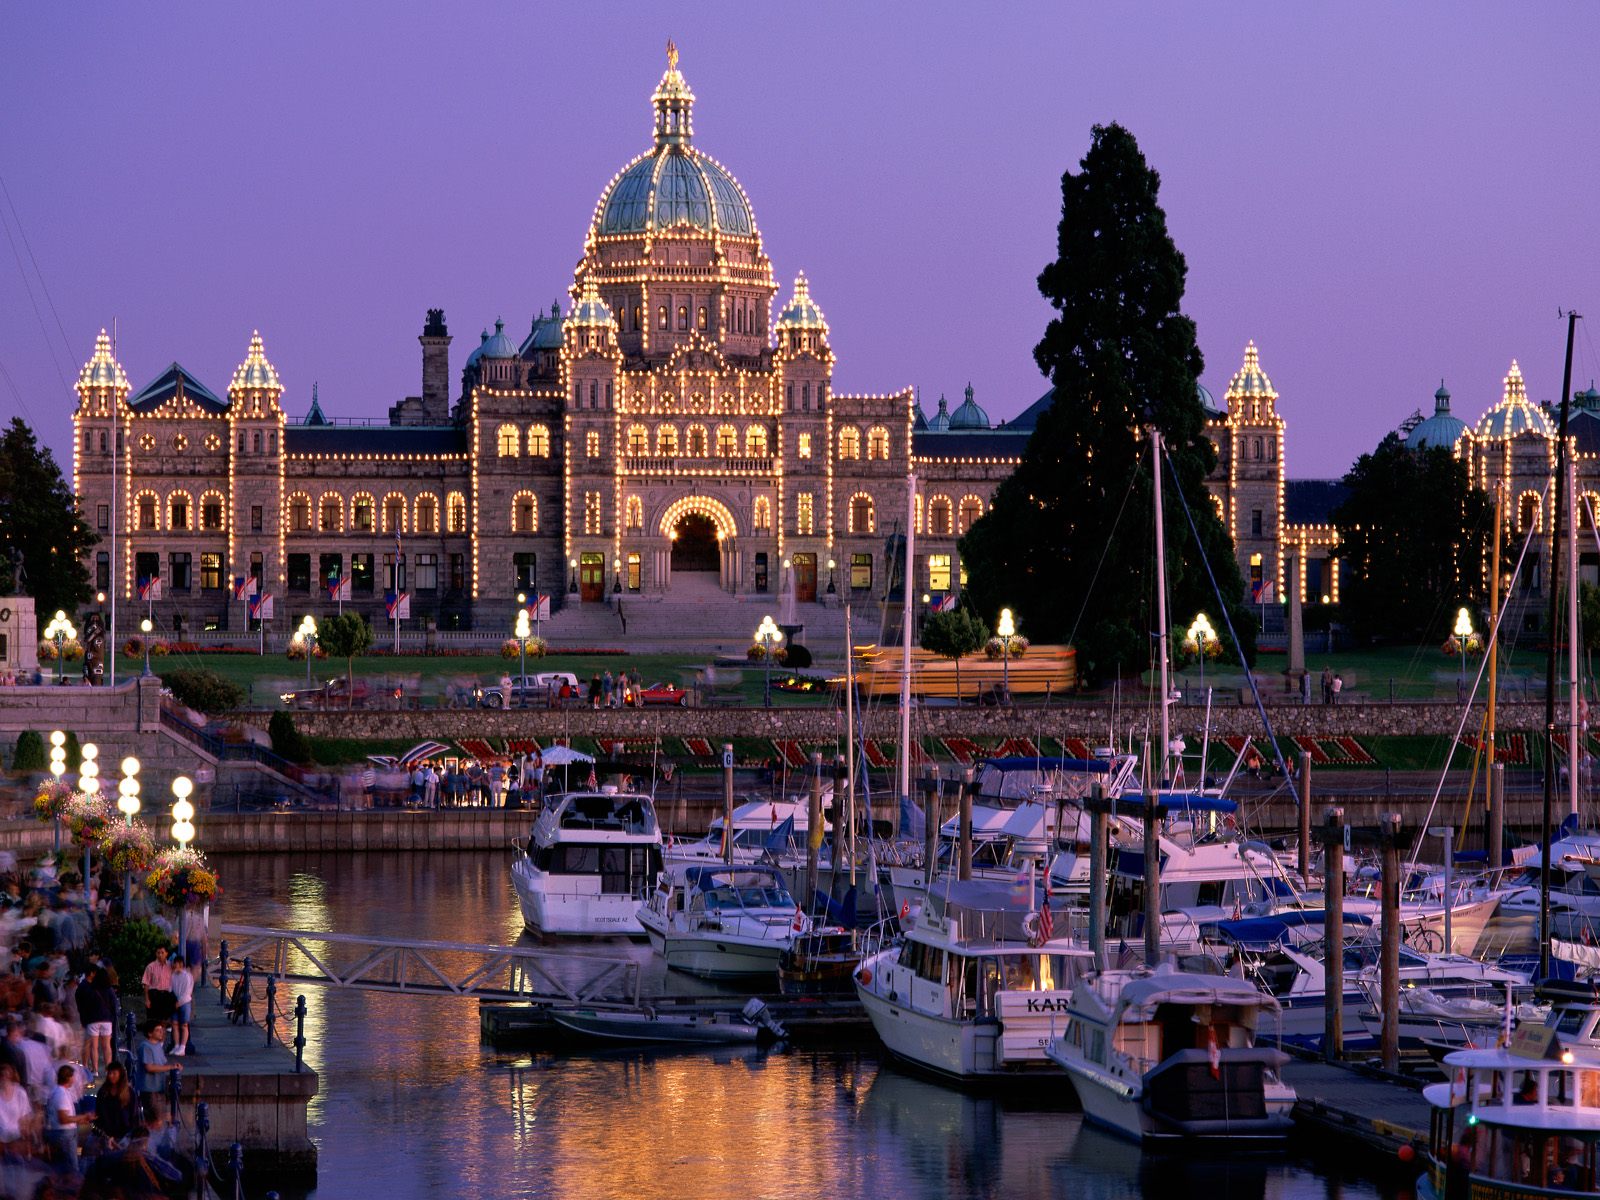 British-Columbia-Legislative-Building-Victoria-British-Columbia-pictures.jpg